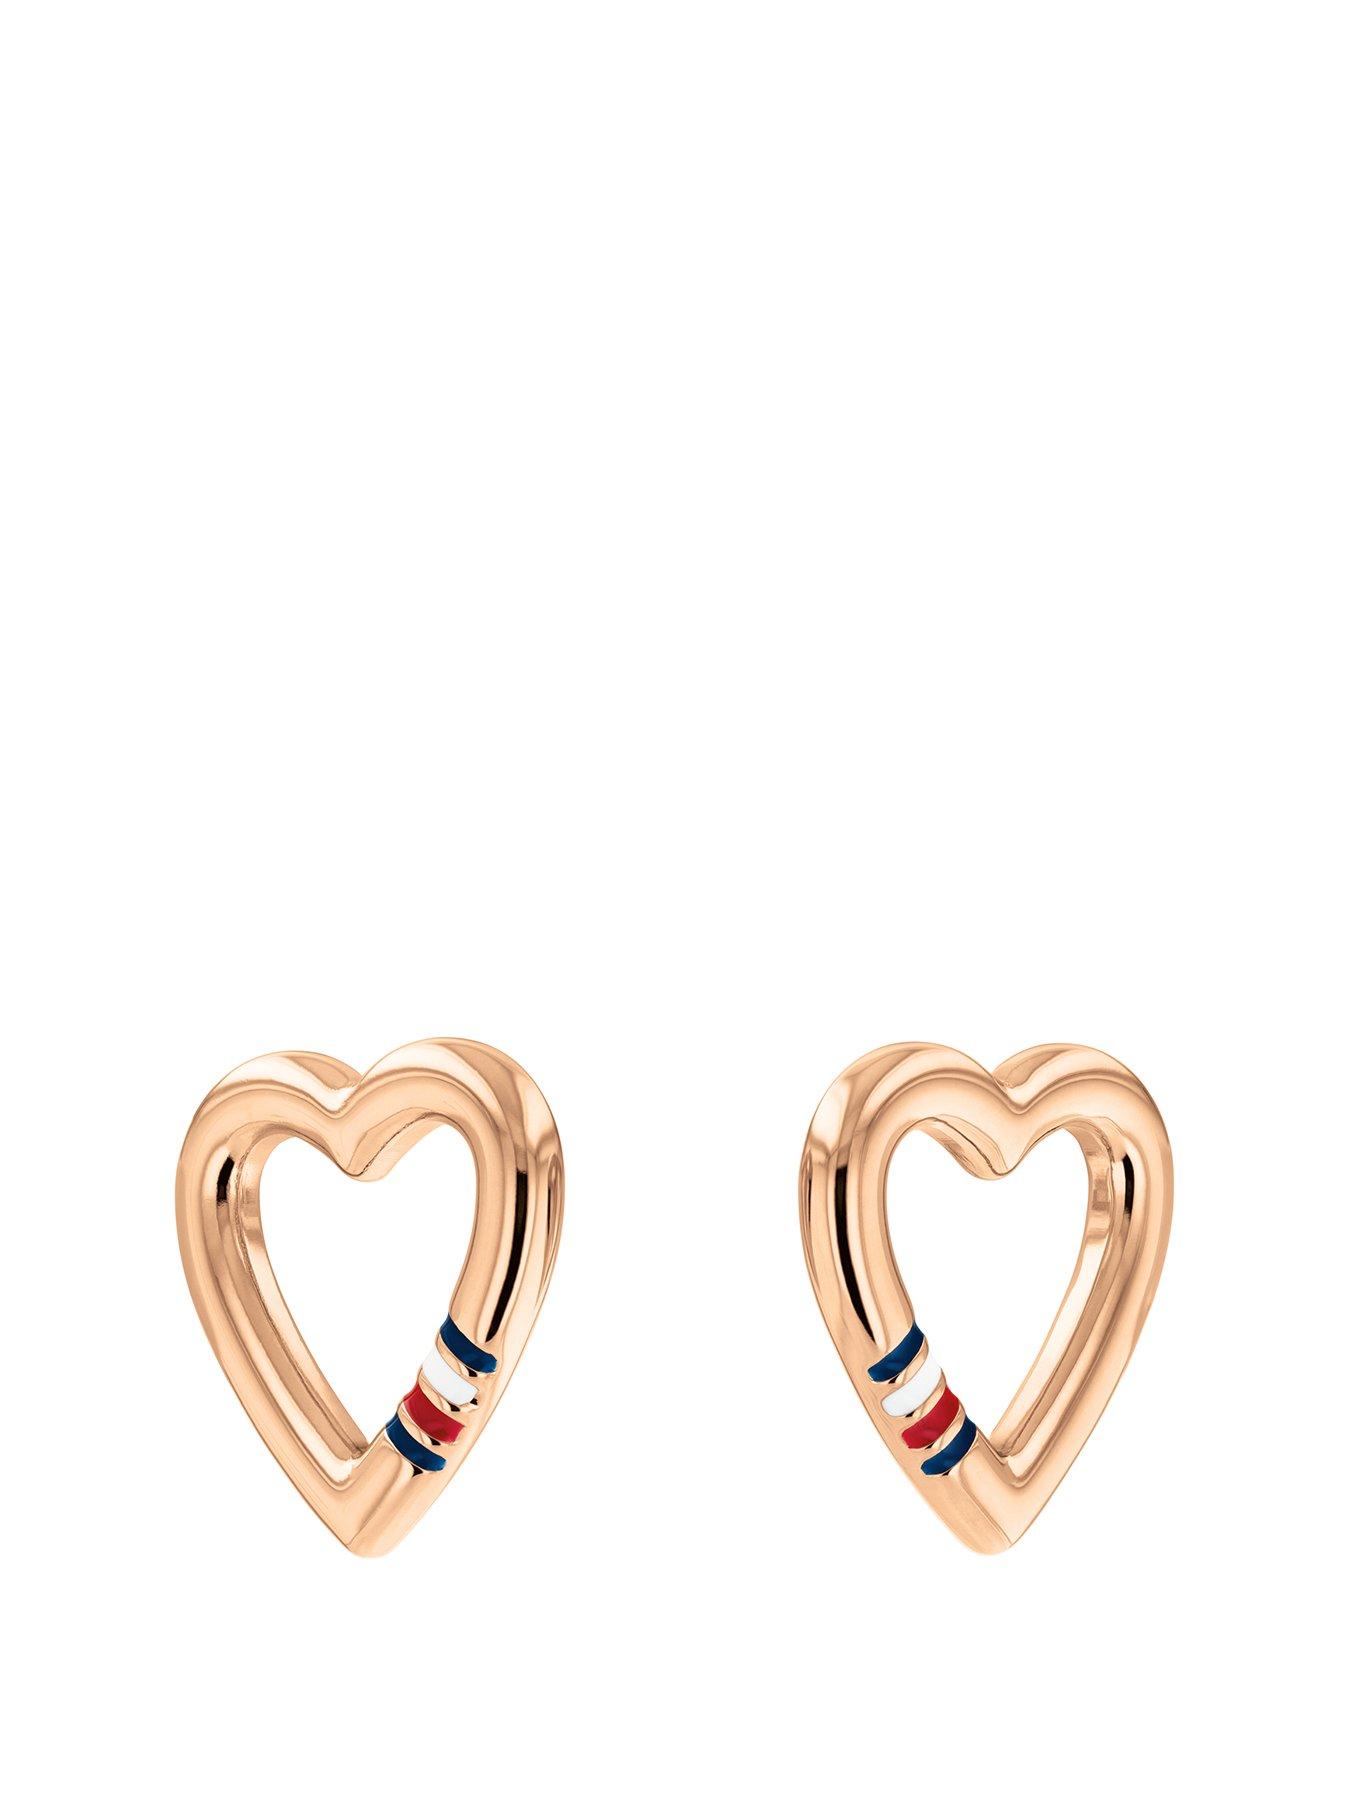 Jewel Tie Solid 14K Three 3 Color Gold Diamond-Cut Fancy Heart Stud Earrings 6x 7mm